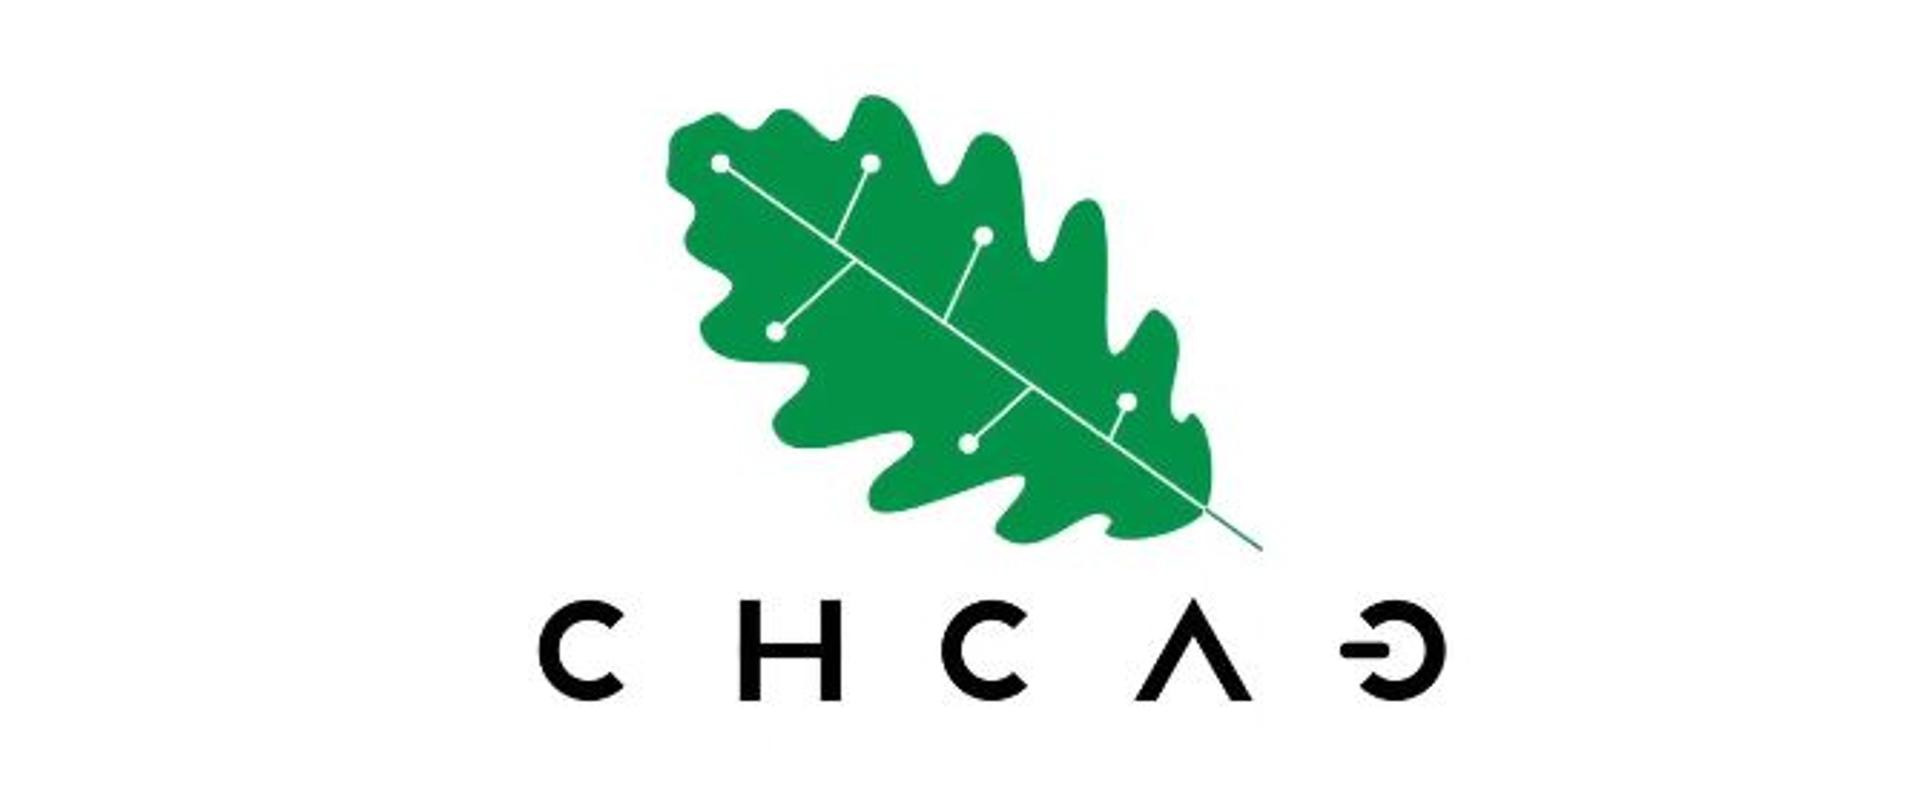 Zdjęcie przedstawia logotyp Chełmskiego Centrum Aktywności Gospodarczej. Liść dębu, a pod nim znajdujący się napis CHCAG.